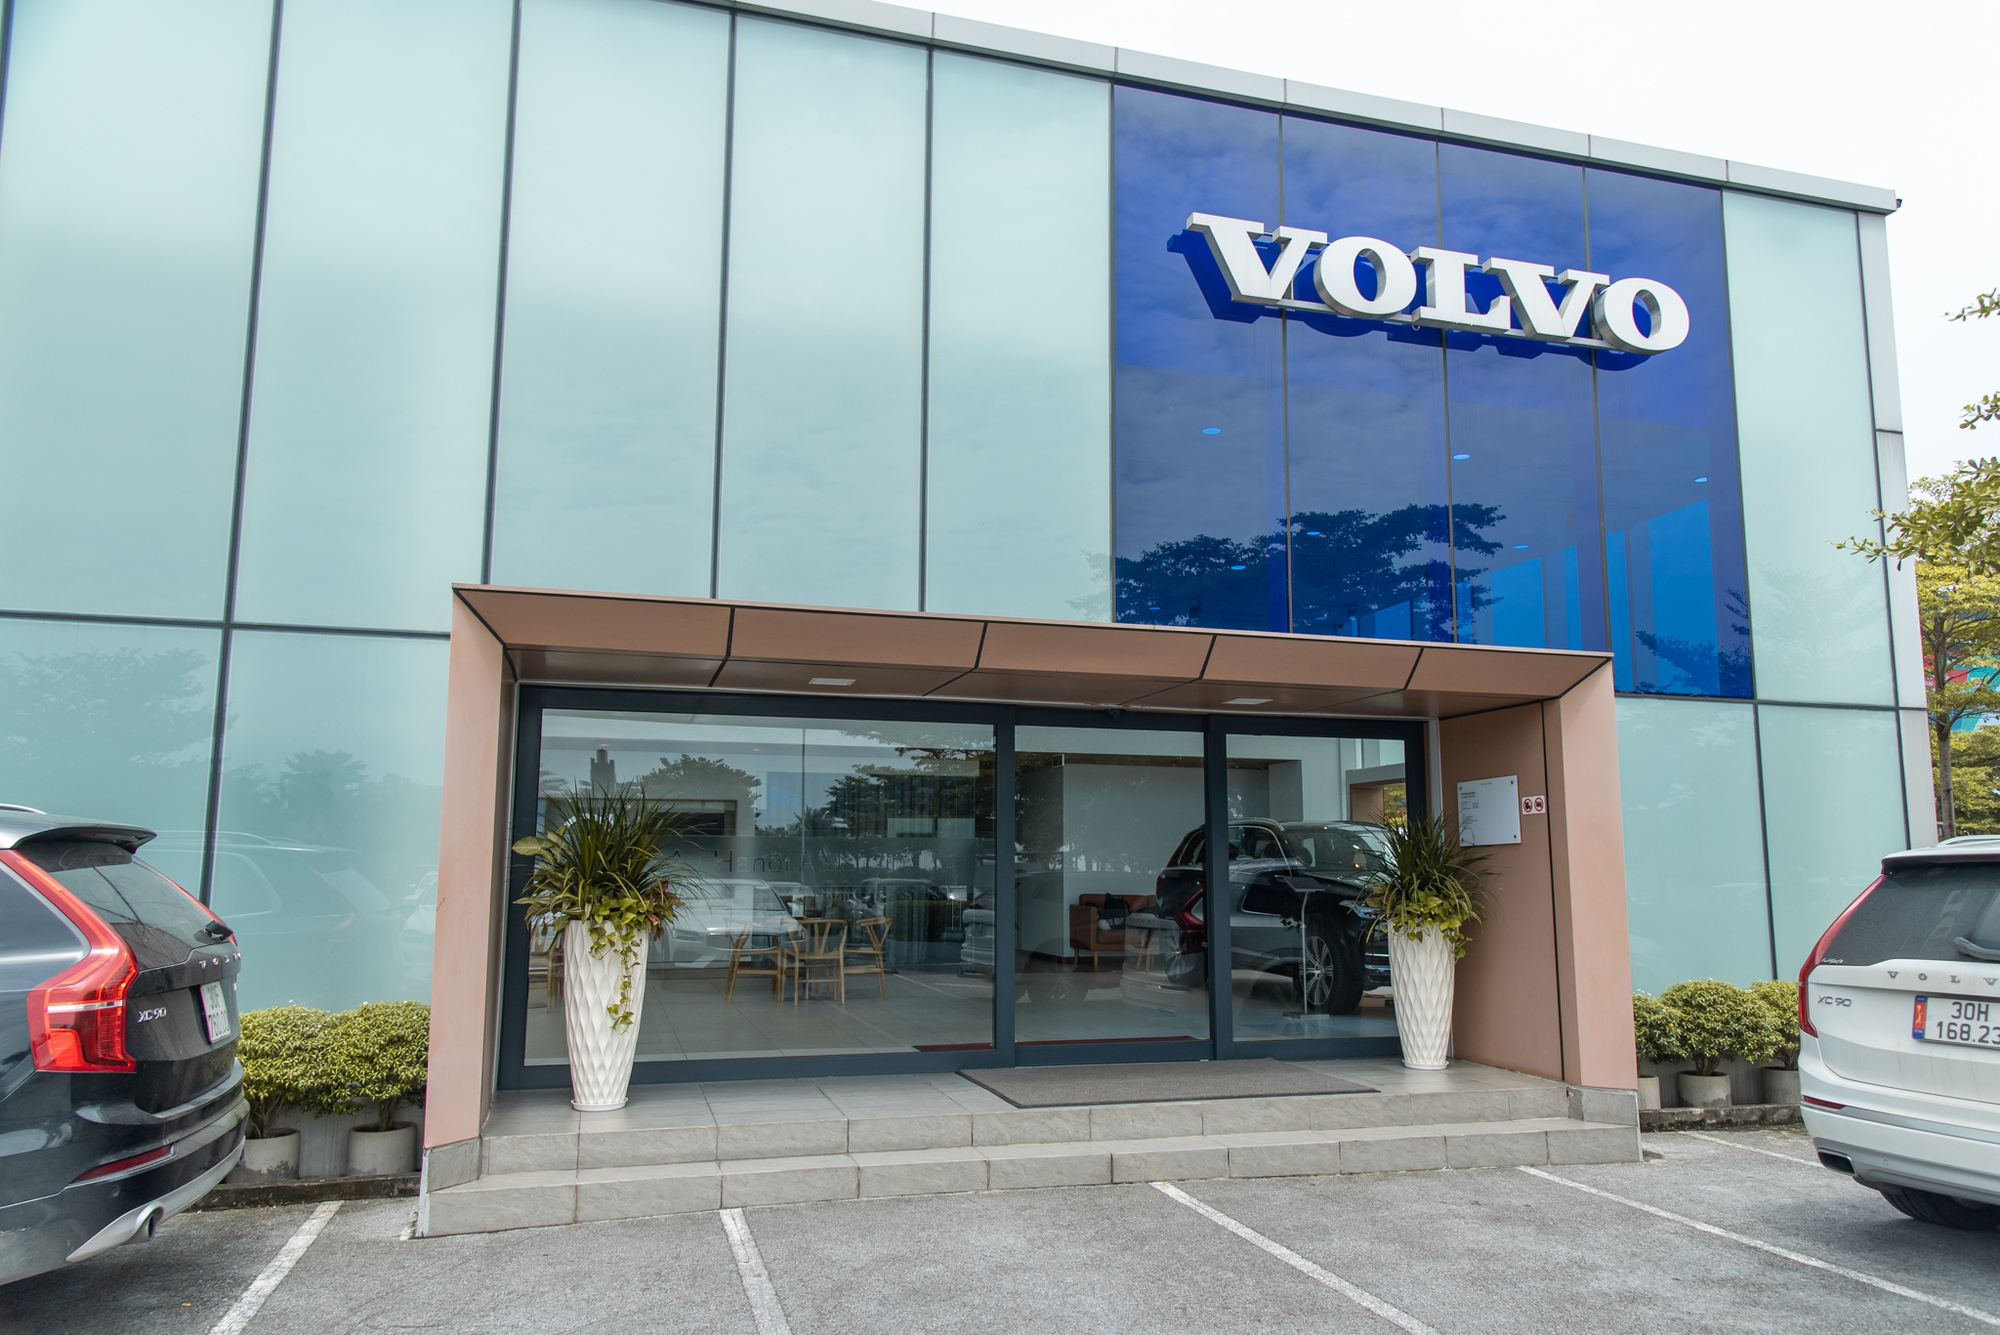 Showroom Volvo Hà Nội - nét trang nhã Bắc Âu giữa lòng thủ đô - Ảnh 2.